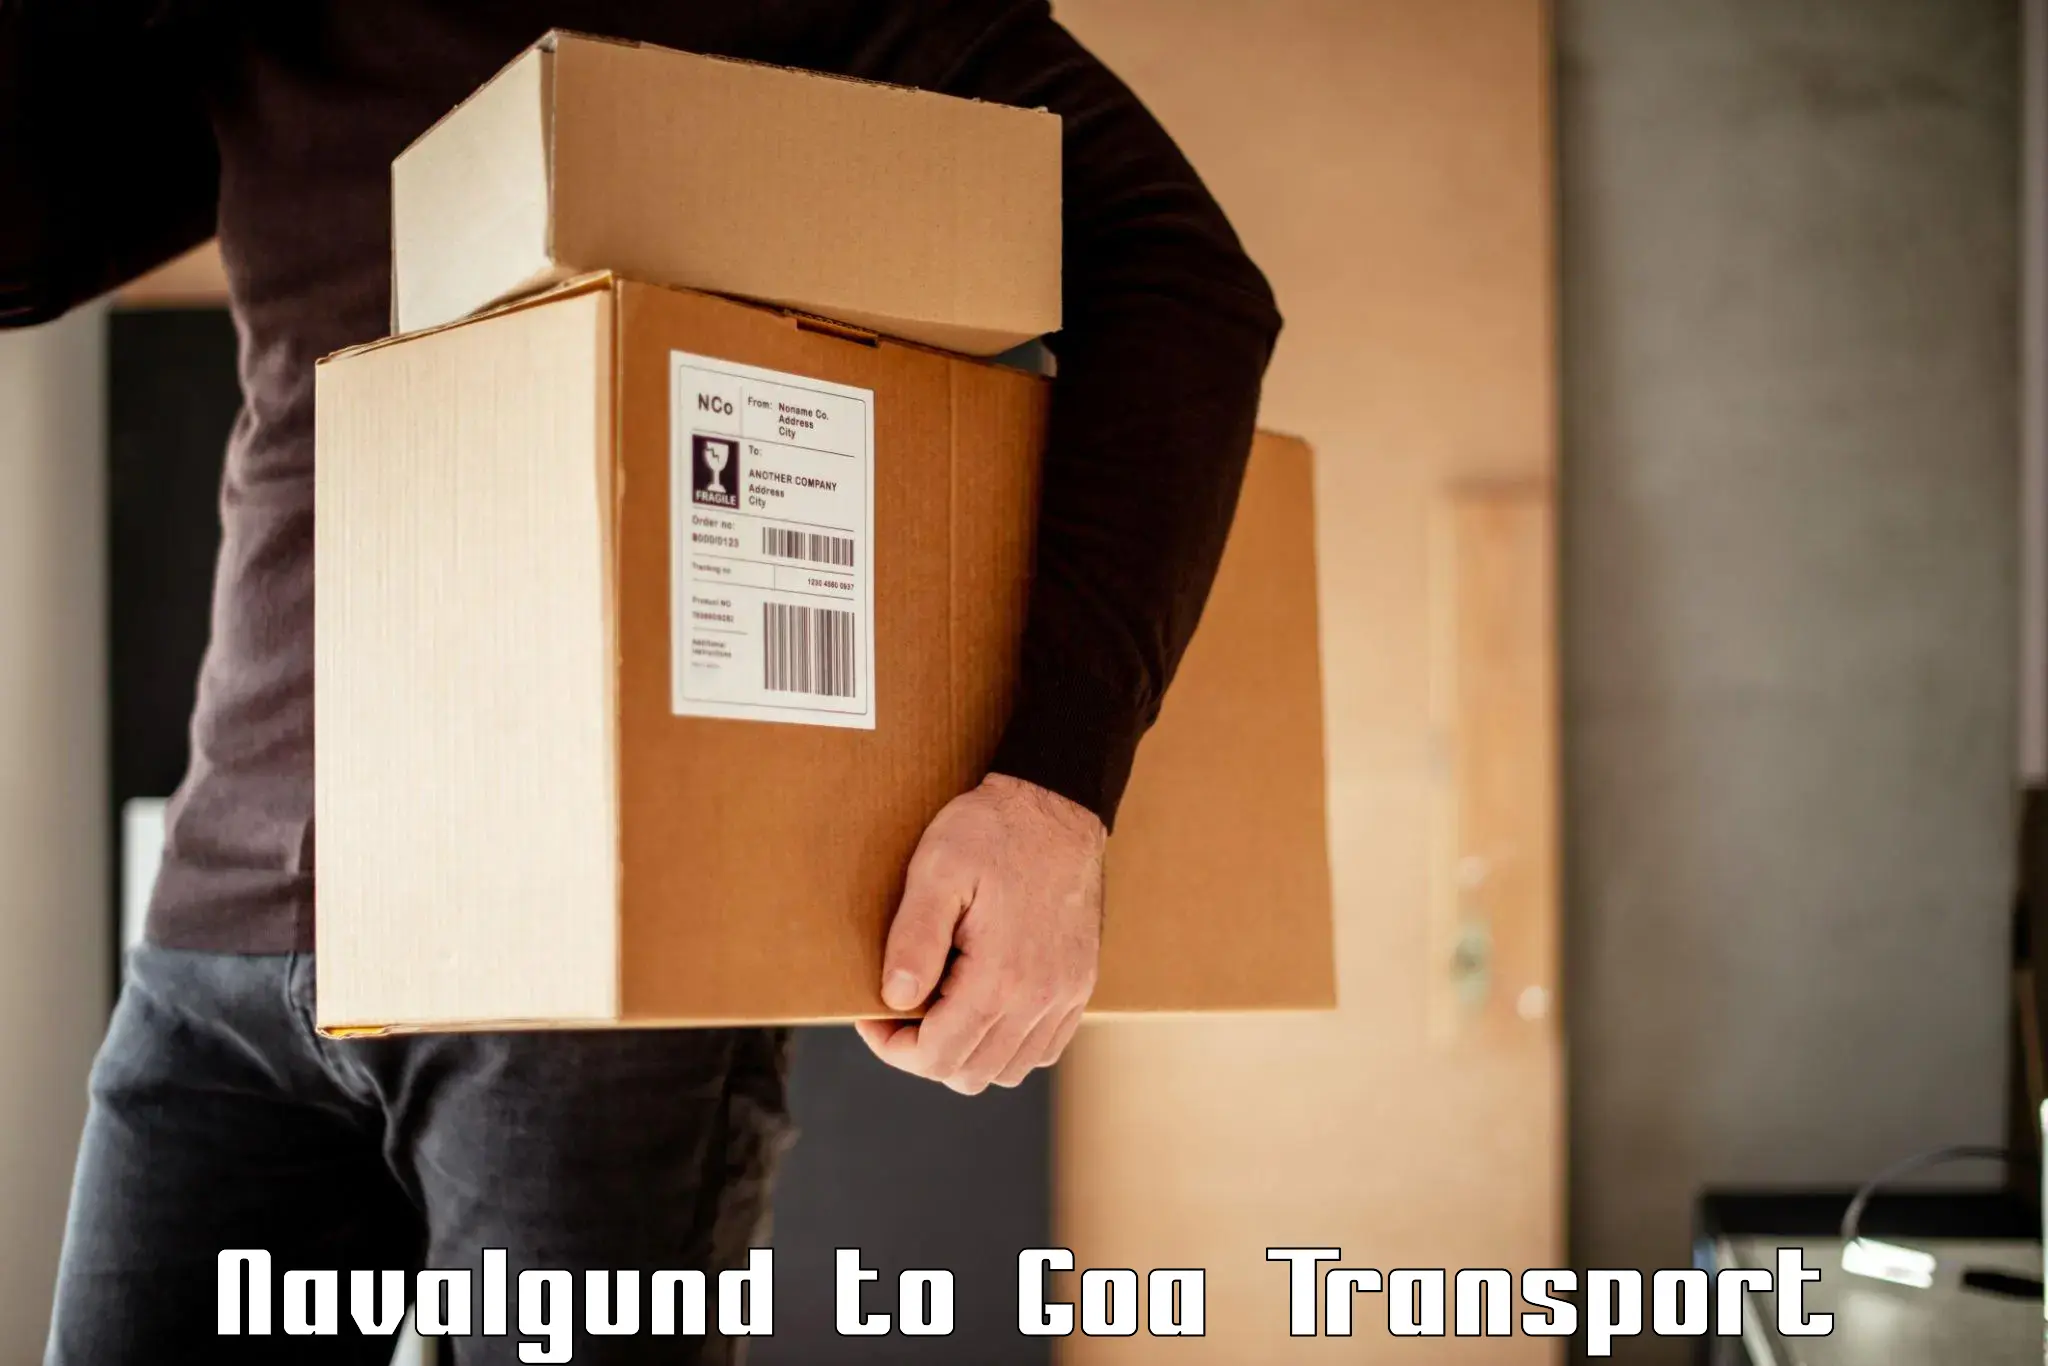 Goods transport services Navalgund to IIT Goa